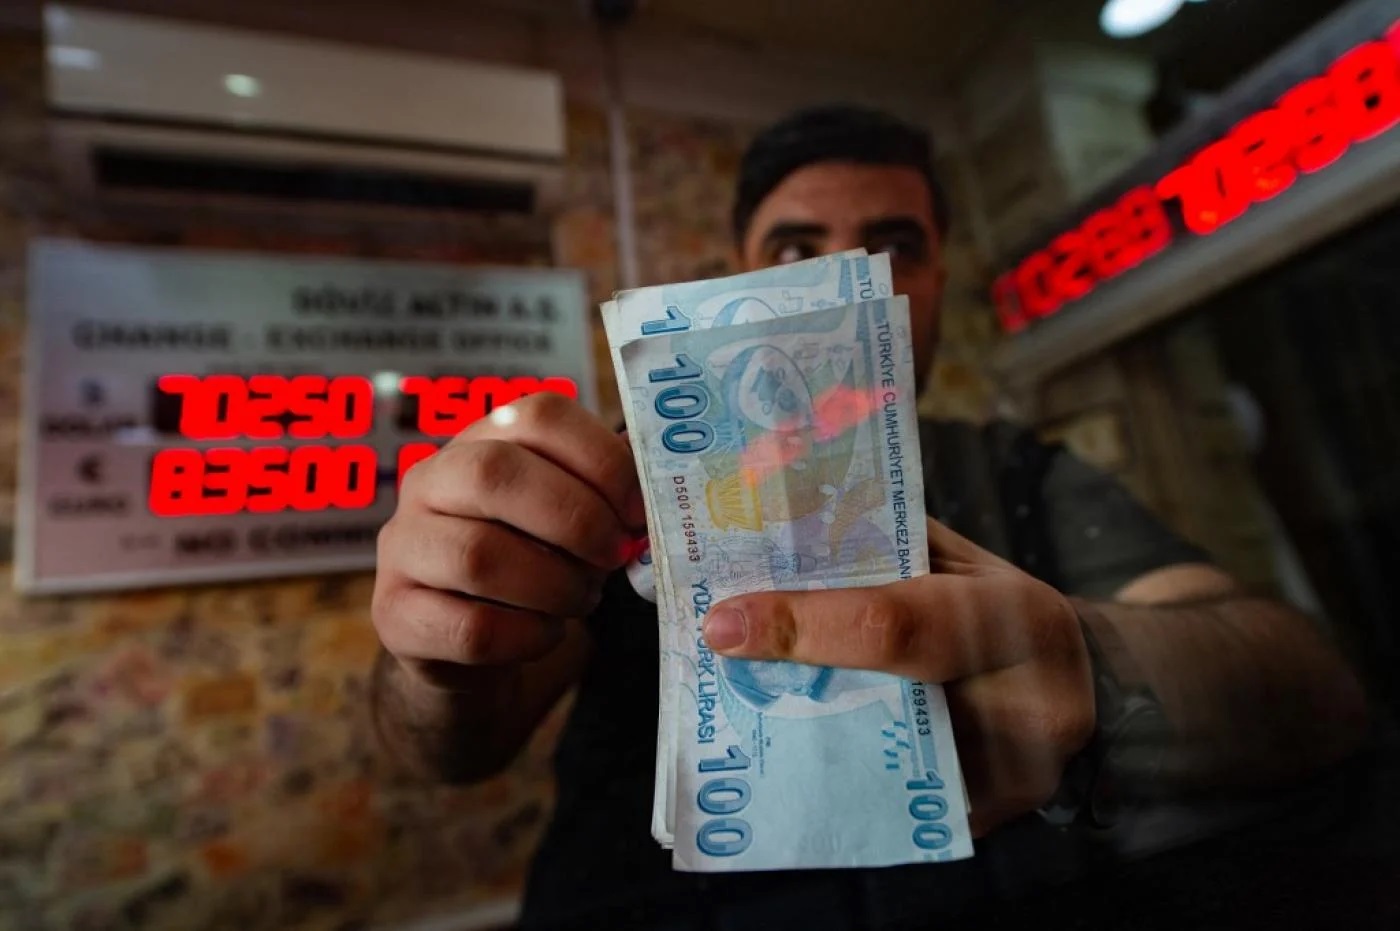 دلیل کاهش ارزش پول ملی ترکیه چیست؟